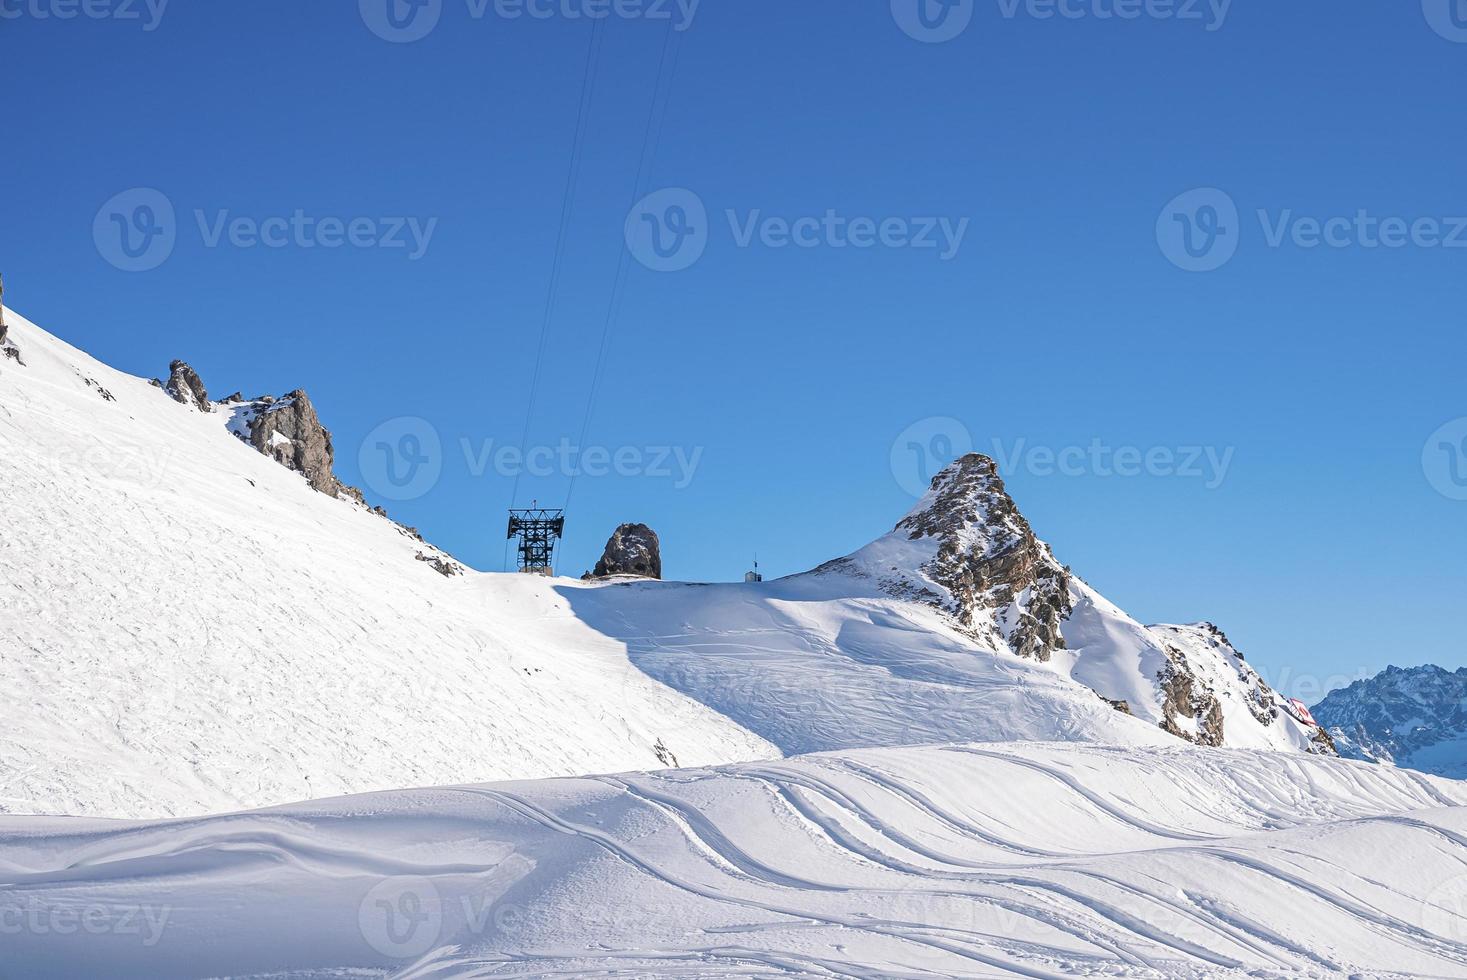 vista das pistas de esqui na montanha de neve contra o céu azul claro foto